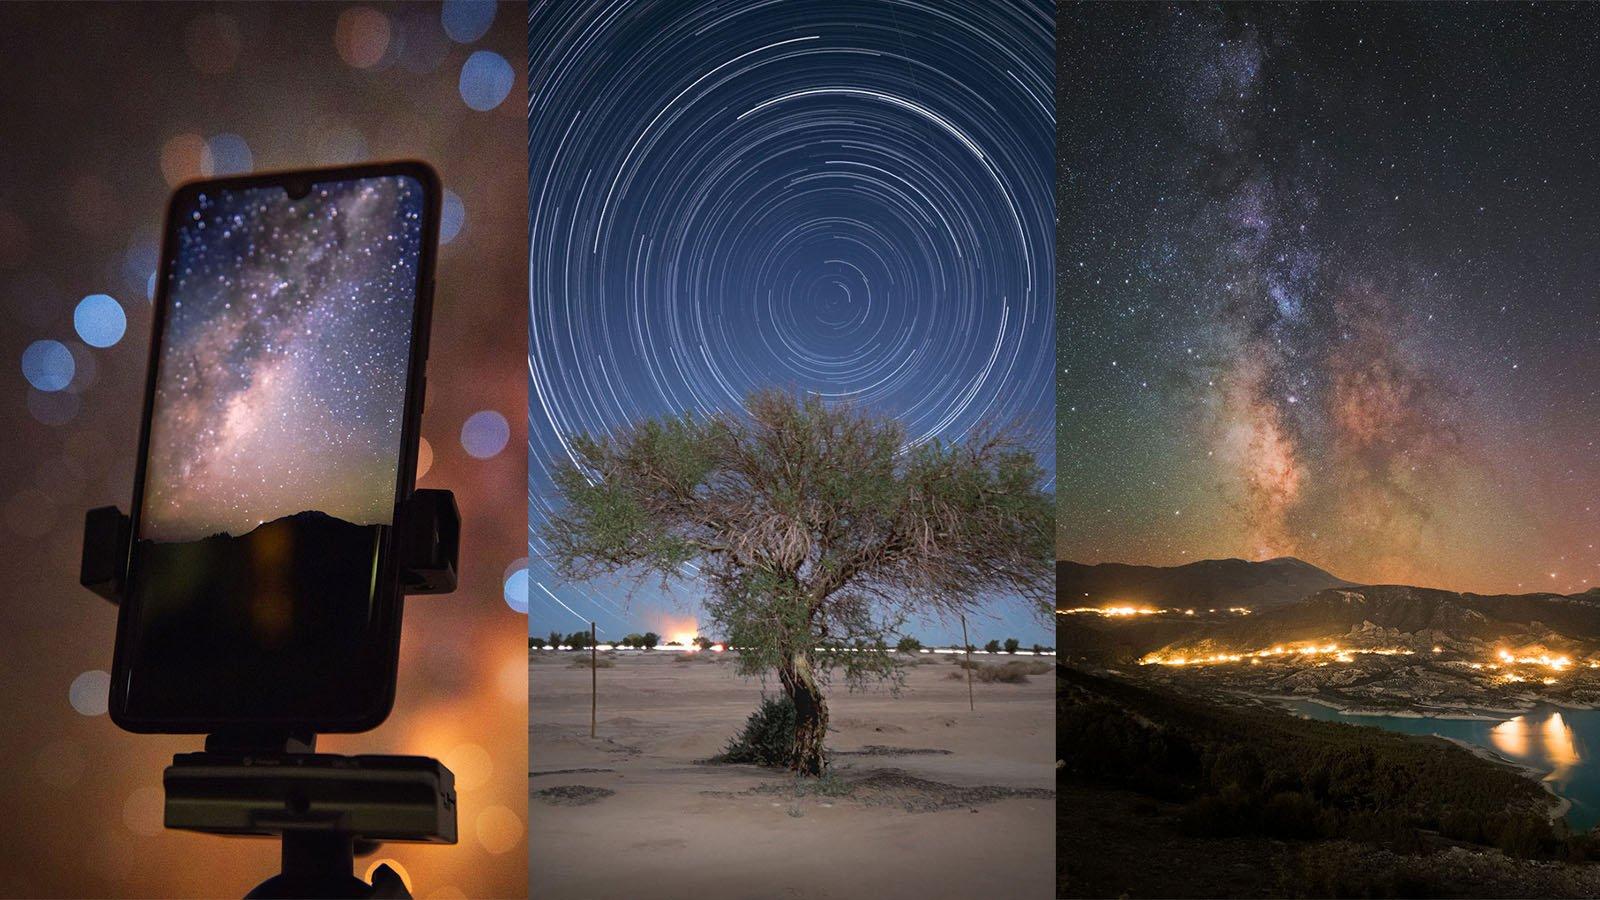 Đừng bỏ lỡ cơ hội chụp ảnh thiên văn trời đêm tuyệt đẹp với điện thoại của bạn. Chất lượng hình ảnh sẽ khiến bạn cảm thấy như mình đang trực tiếp đứng dưới bầu trời đầy sao. Hãy bắt đầu khám phá ngay hôm nay!